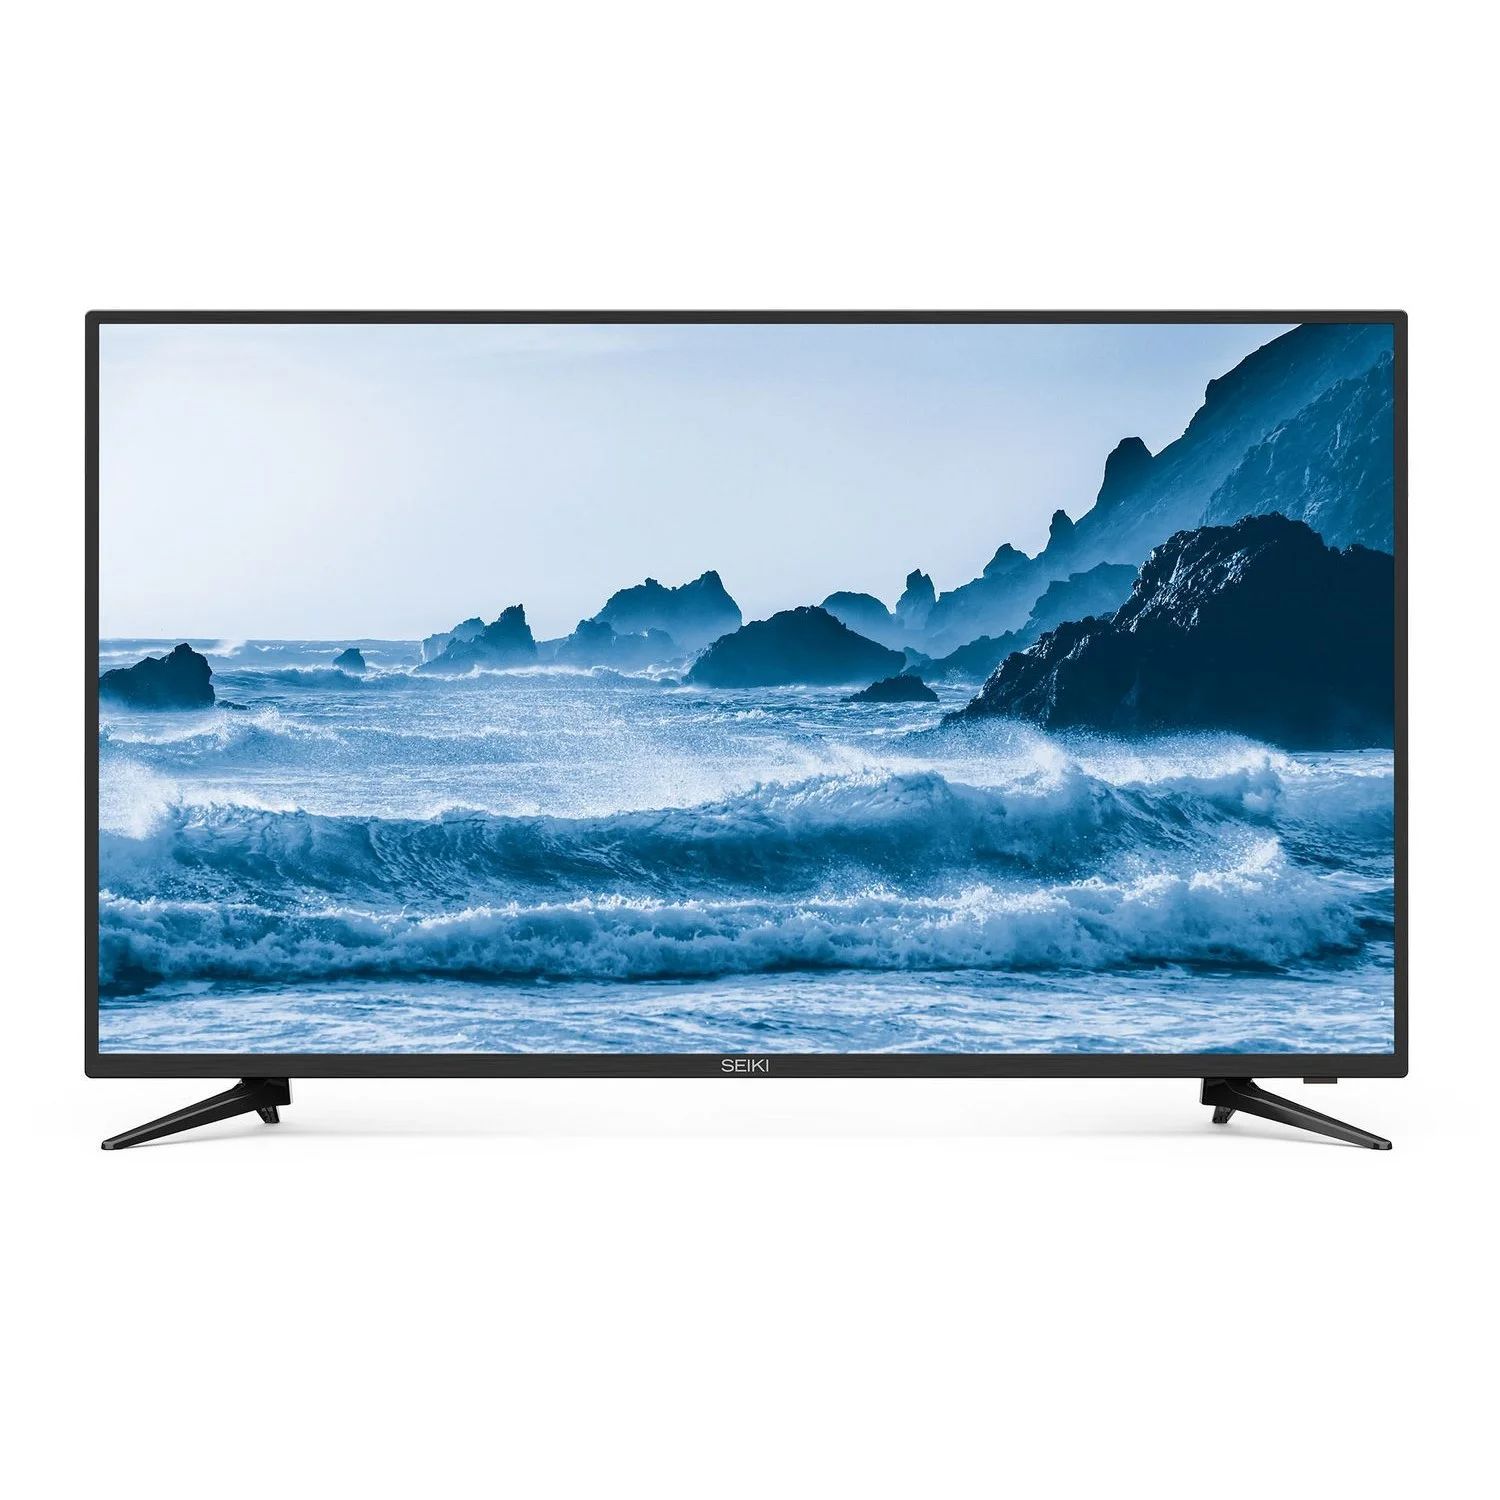 Seiki 39" Class HD LED TV (SC-39HS950N) | Walmart (US)